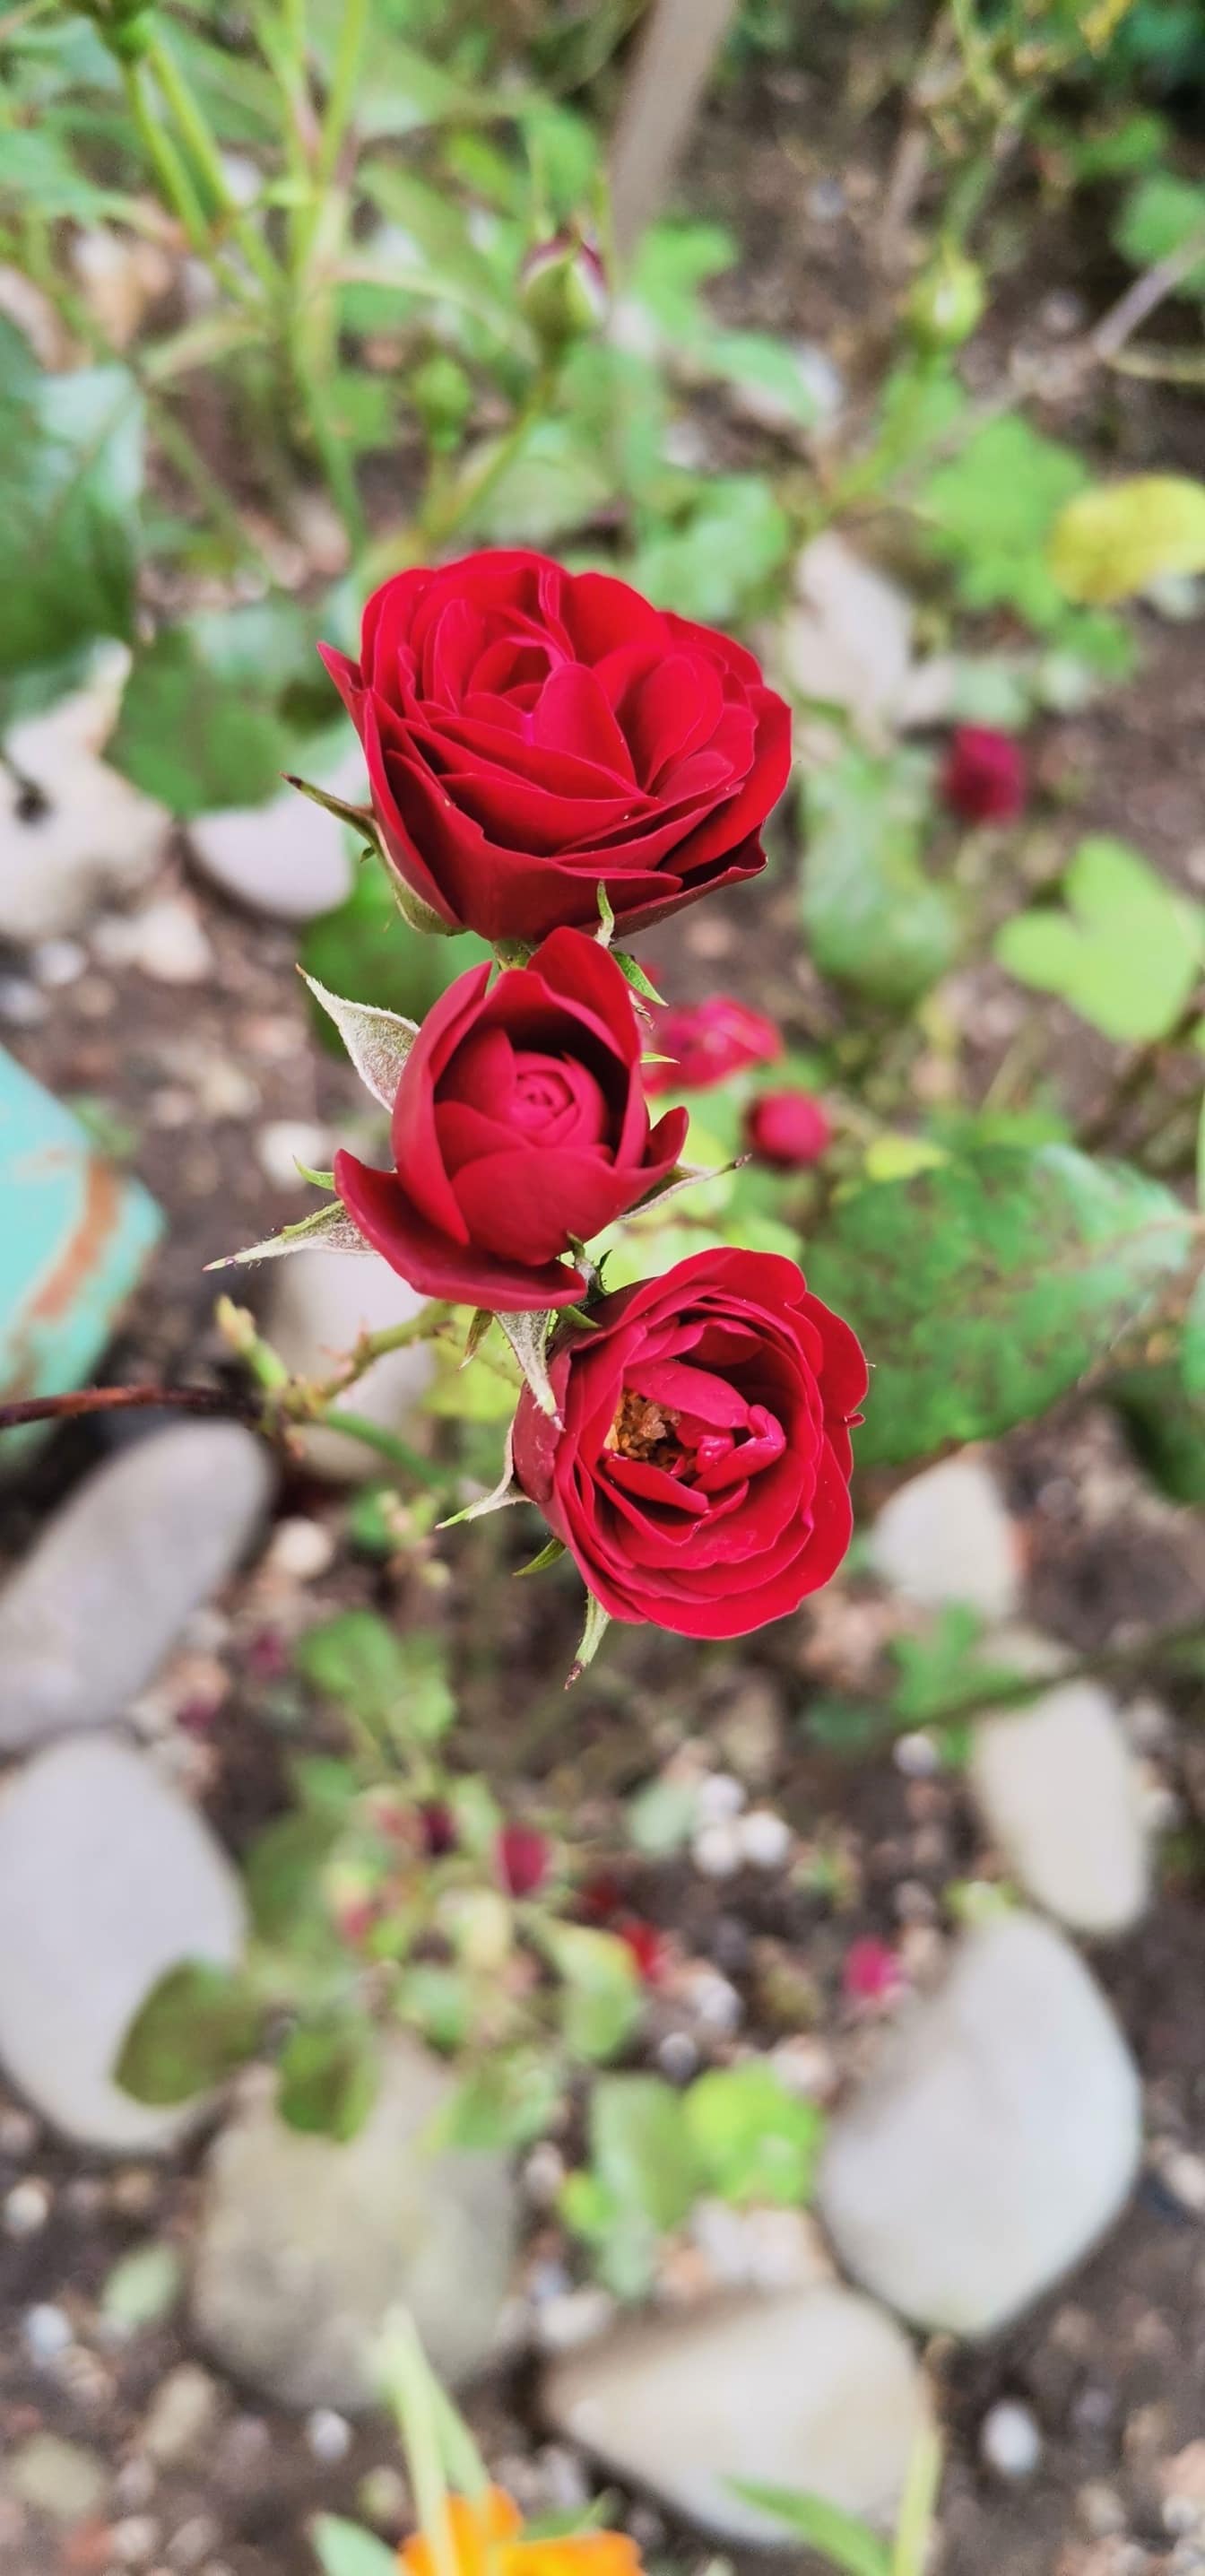 Three dark red rose bud flowers in garden close-up